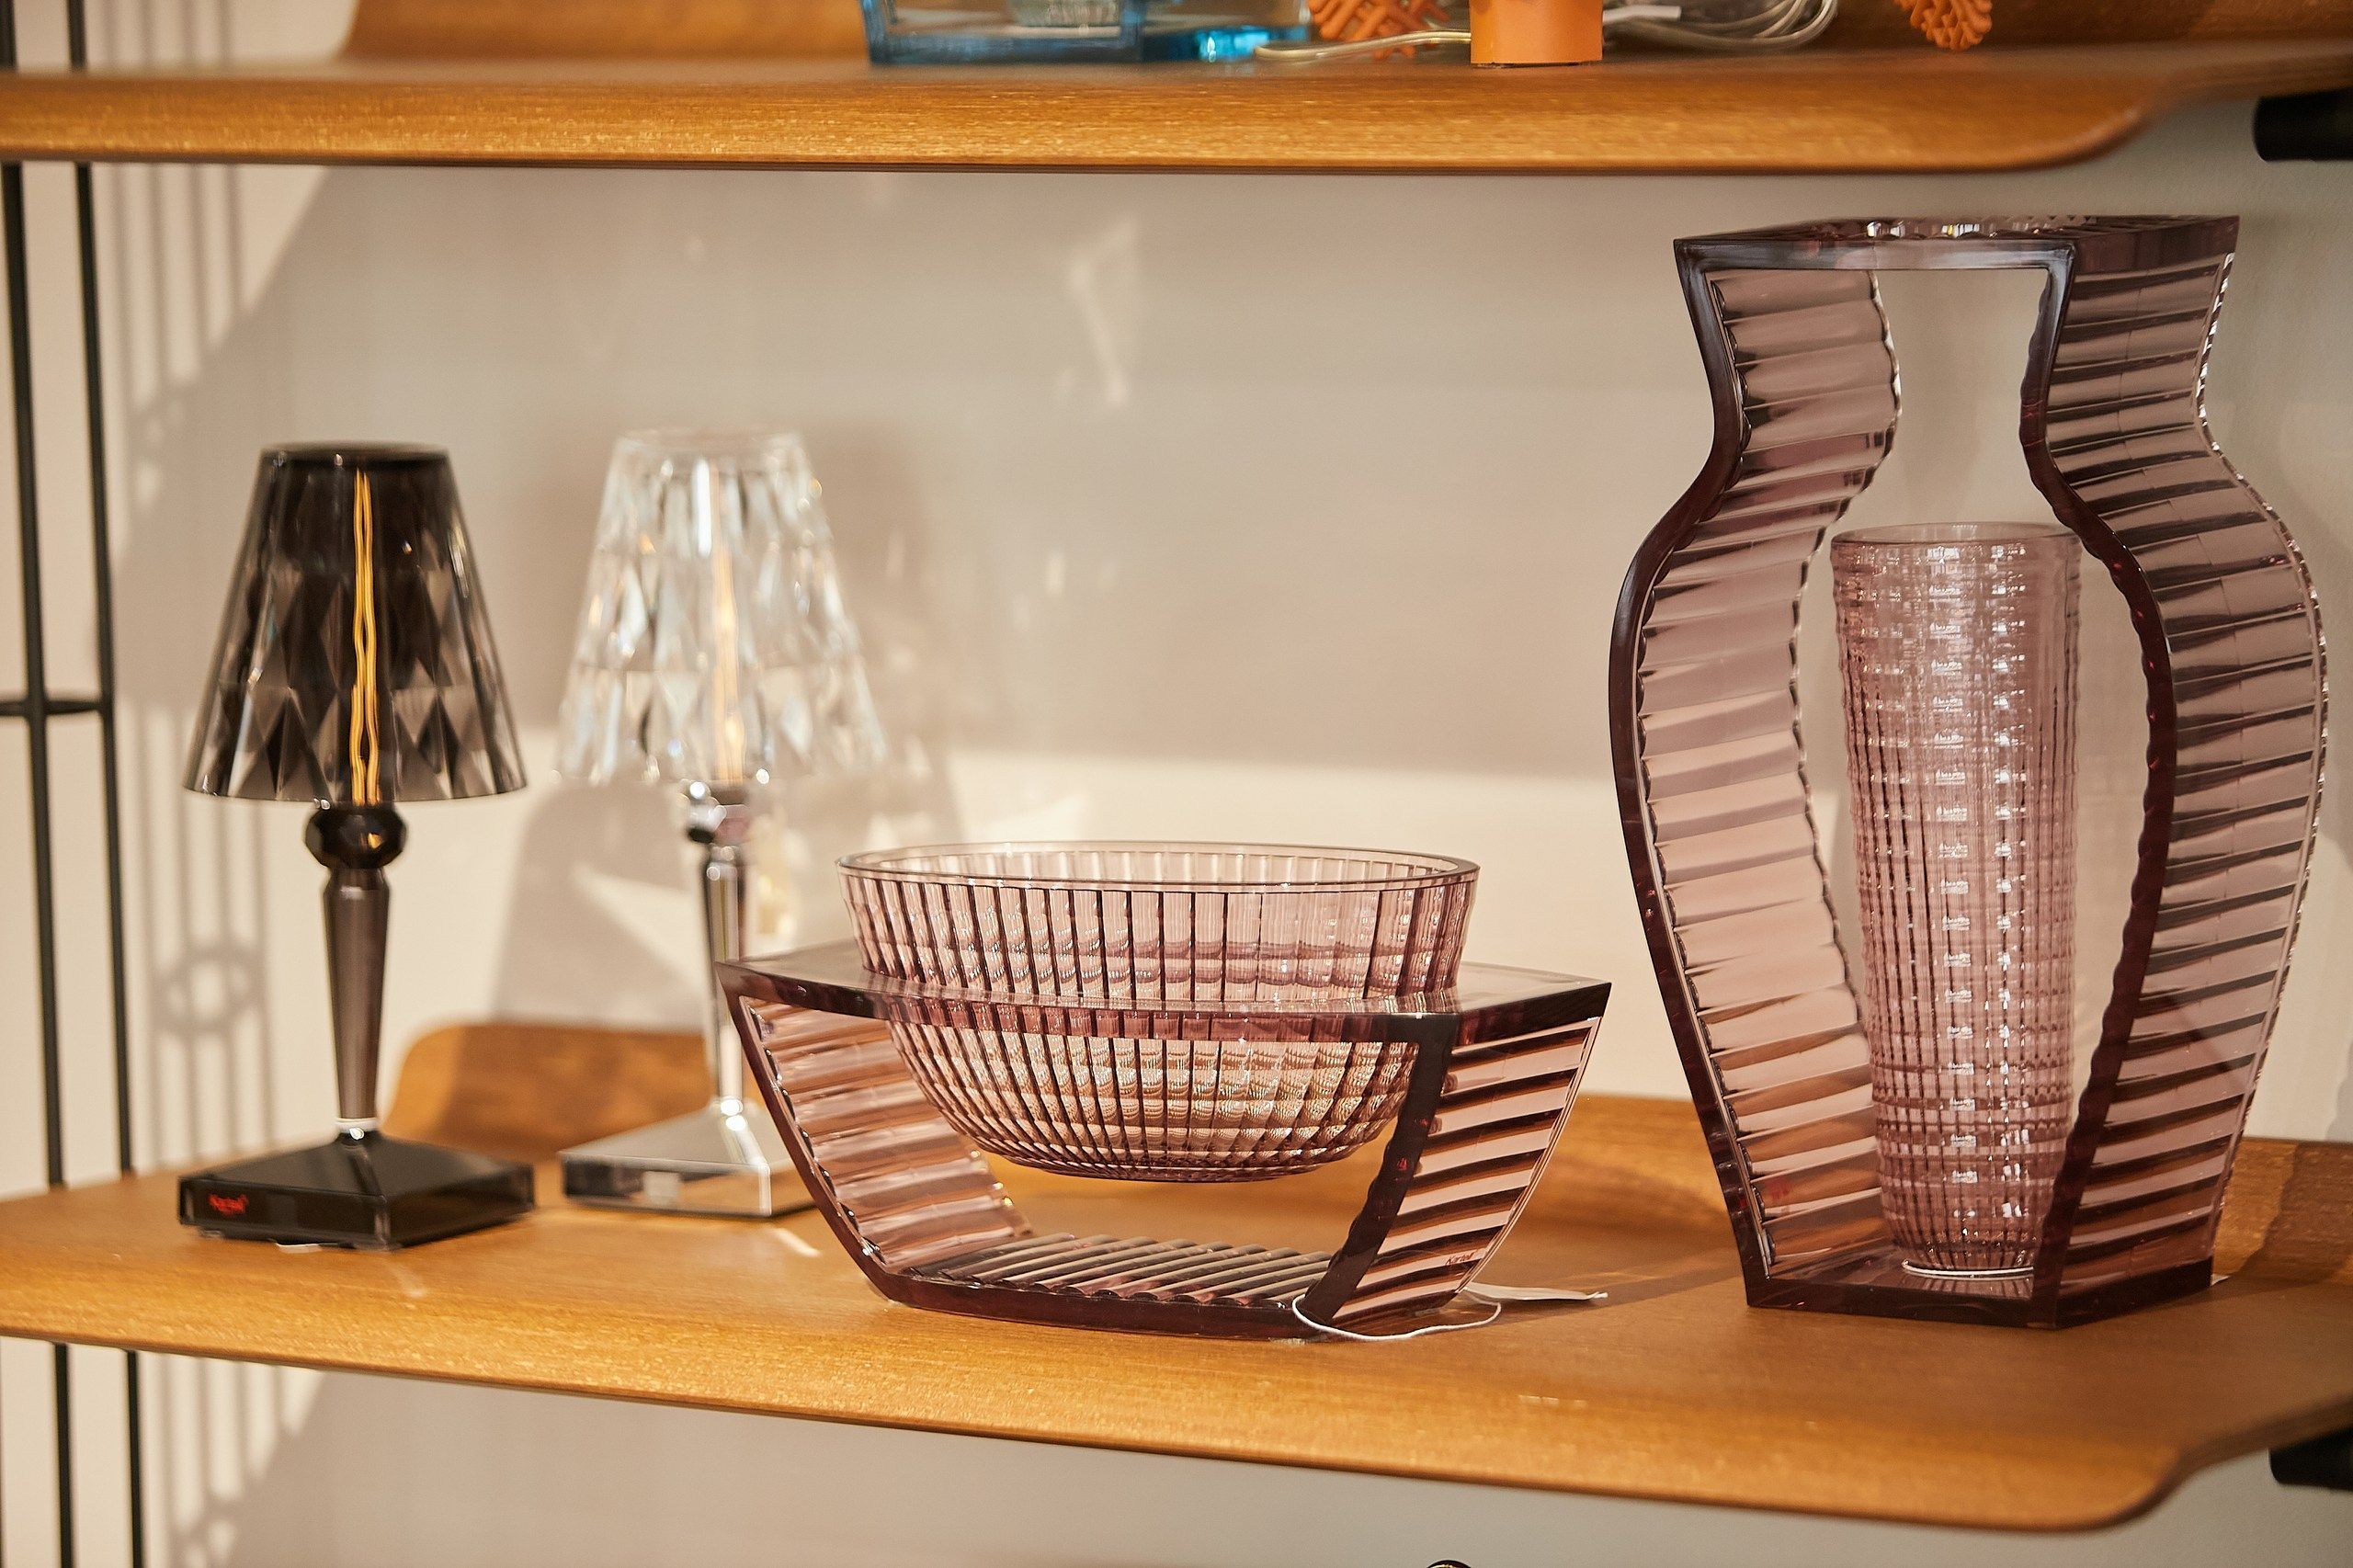 Сравнение ваз из разных материалов: керамика, стекло, металл